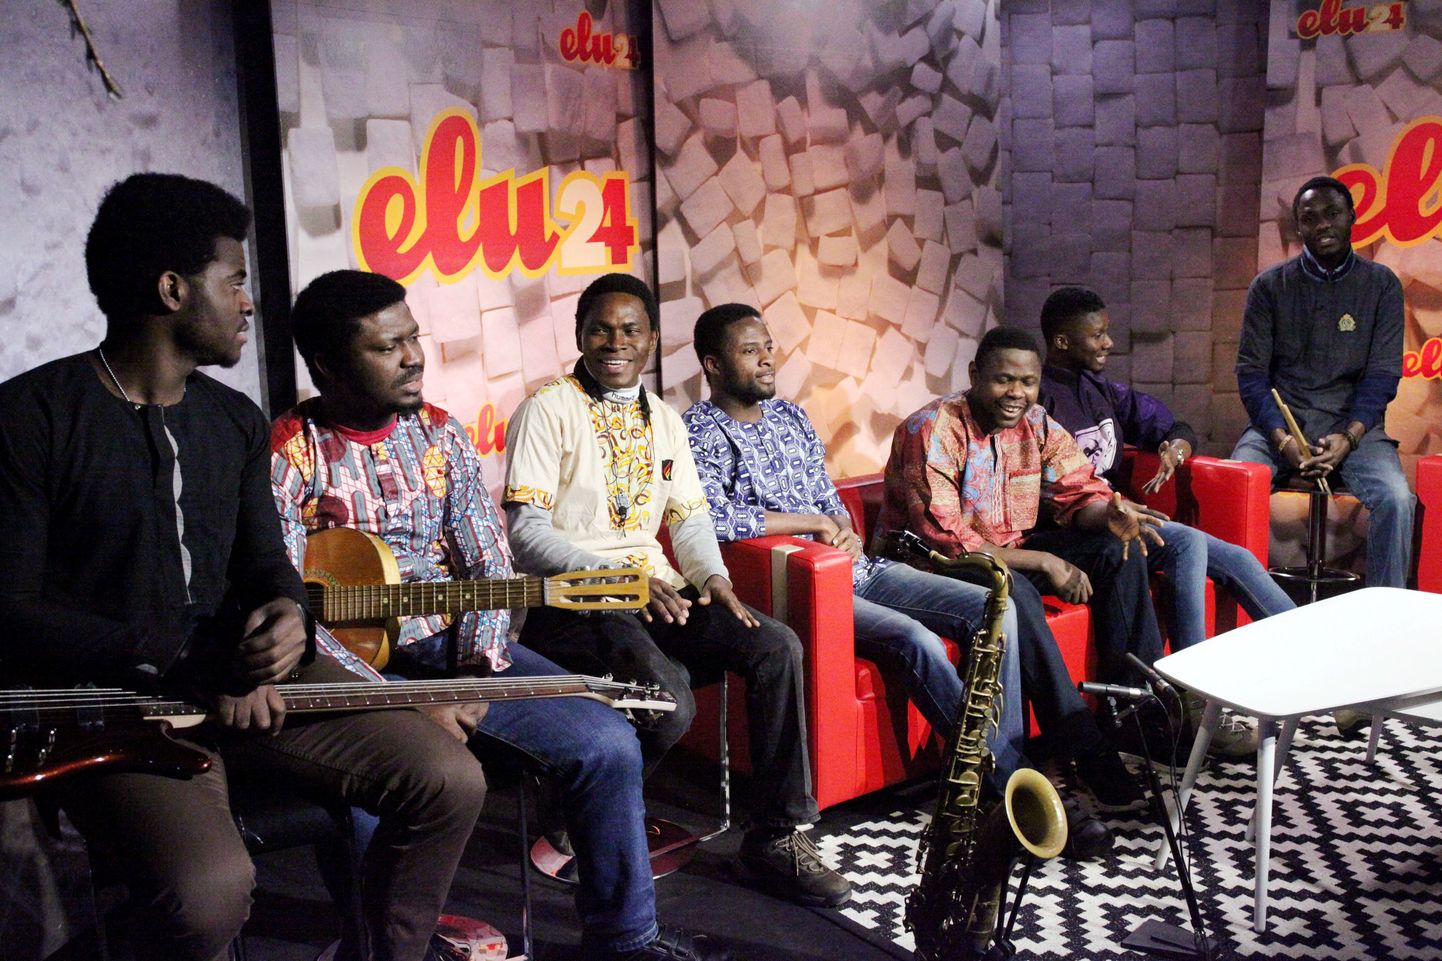 Elu24 Live - külalised Nigeeriast